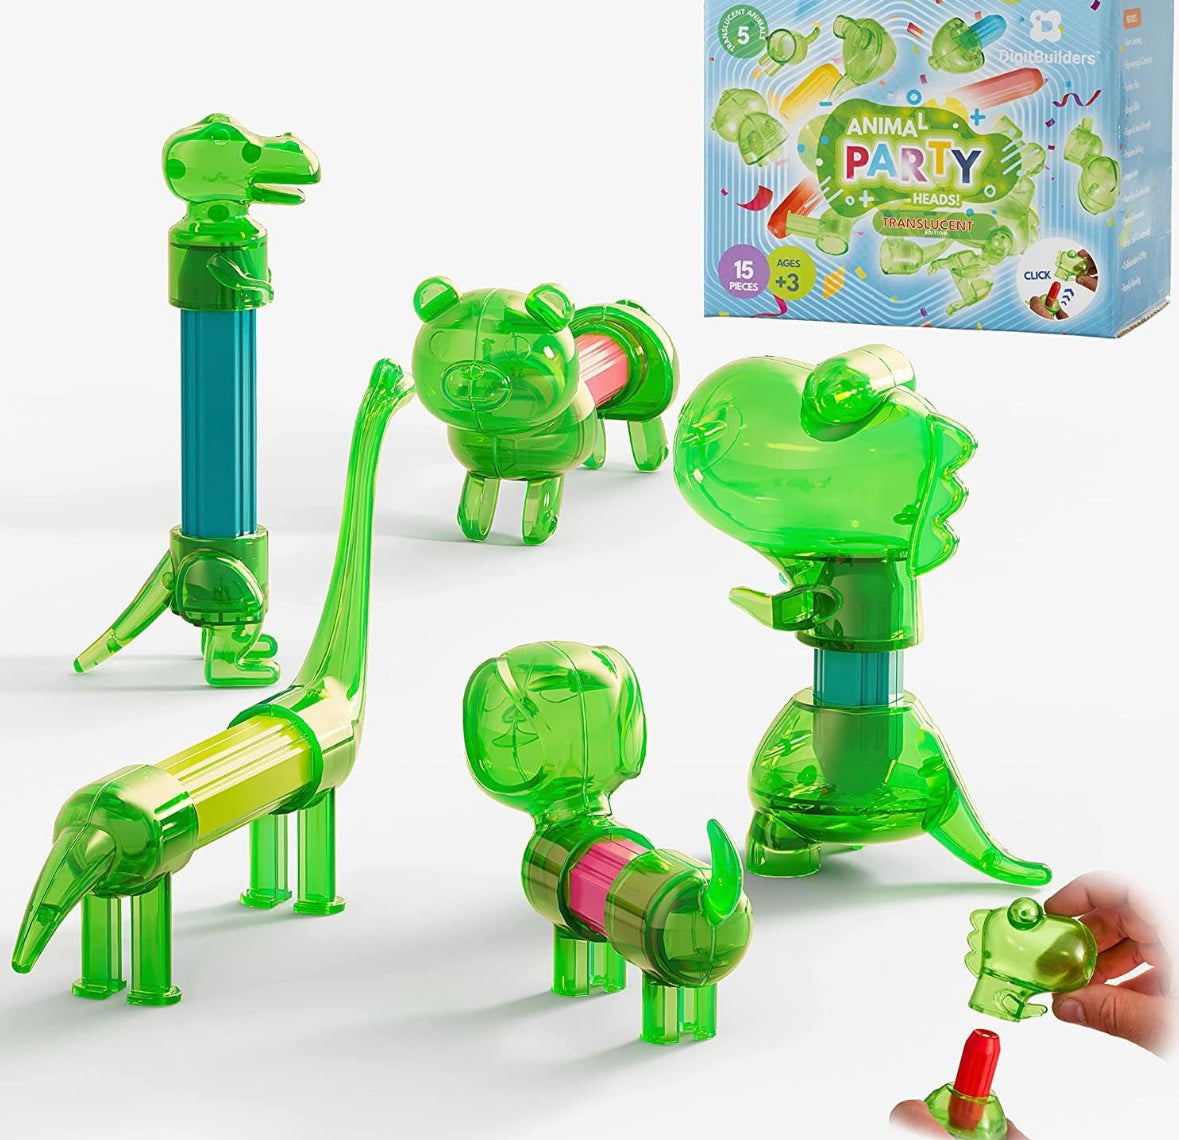 Animales magnéticos transparentes verdes inteligentes para construcción, mezcla y combina la selva, juguete de tallo para ansiedad, 15 piezas